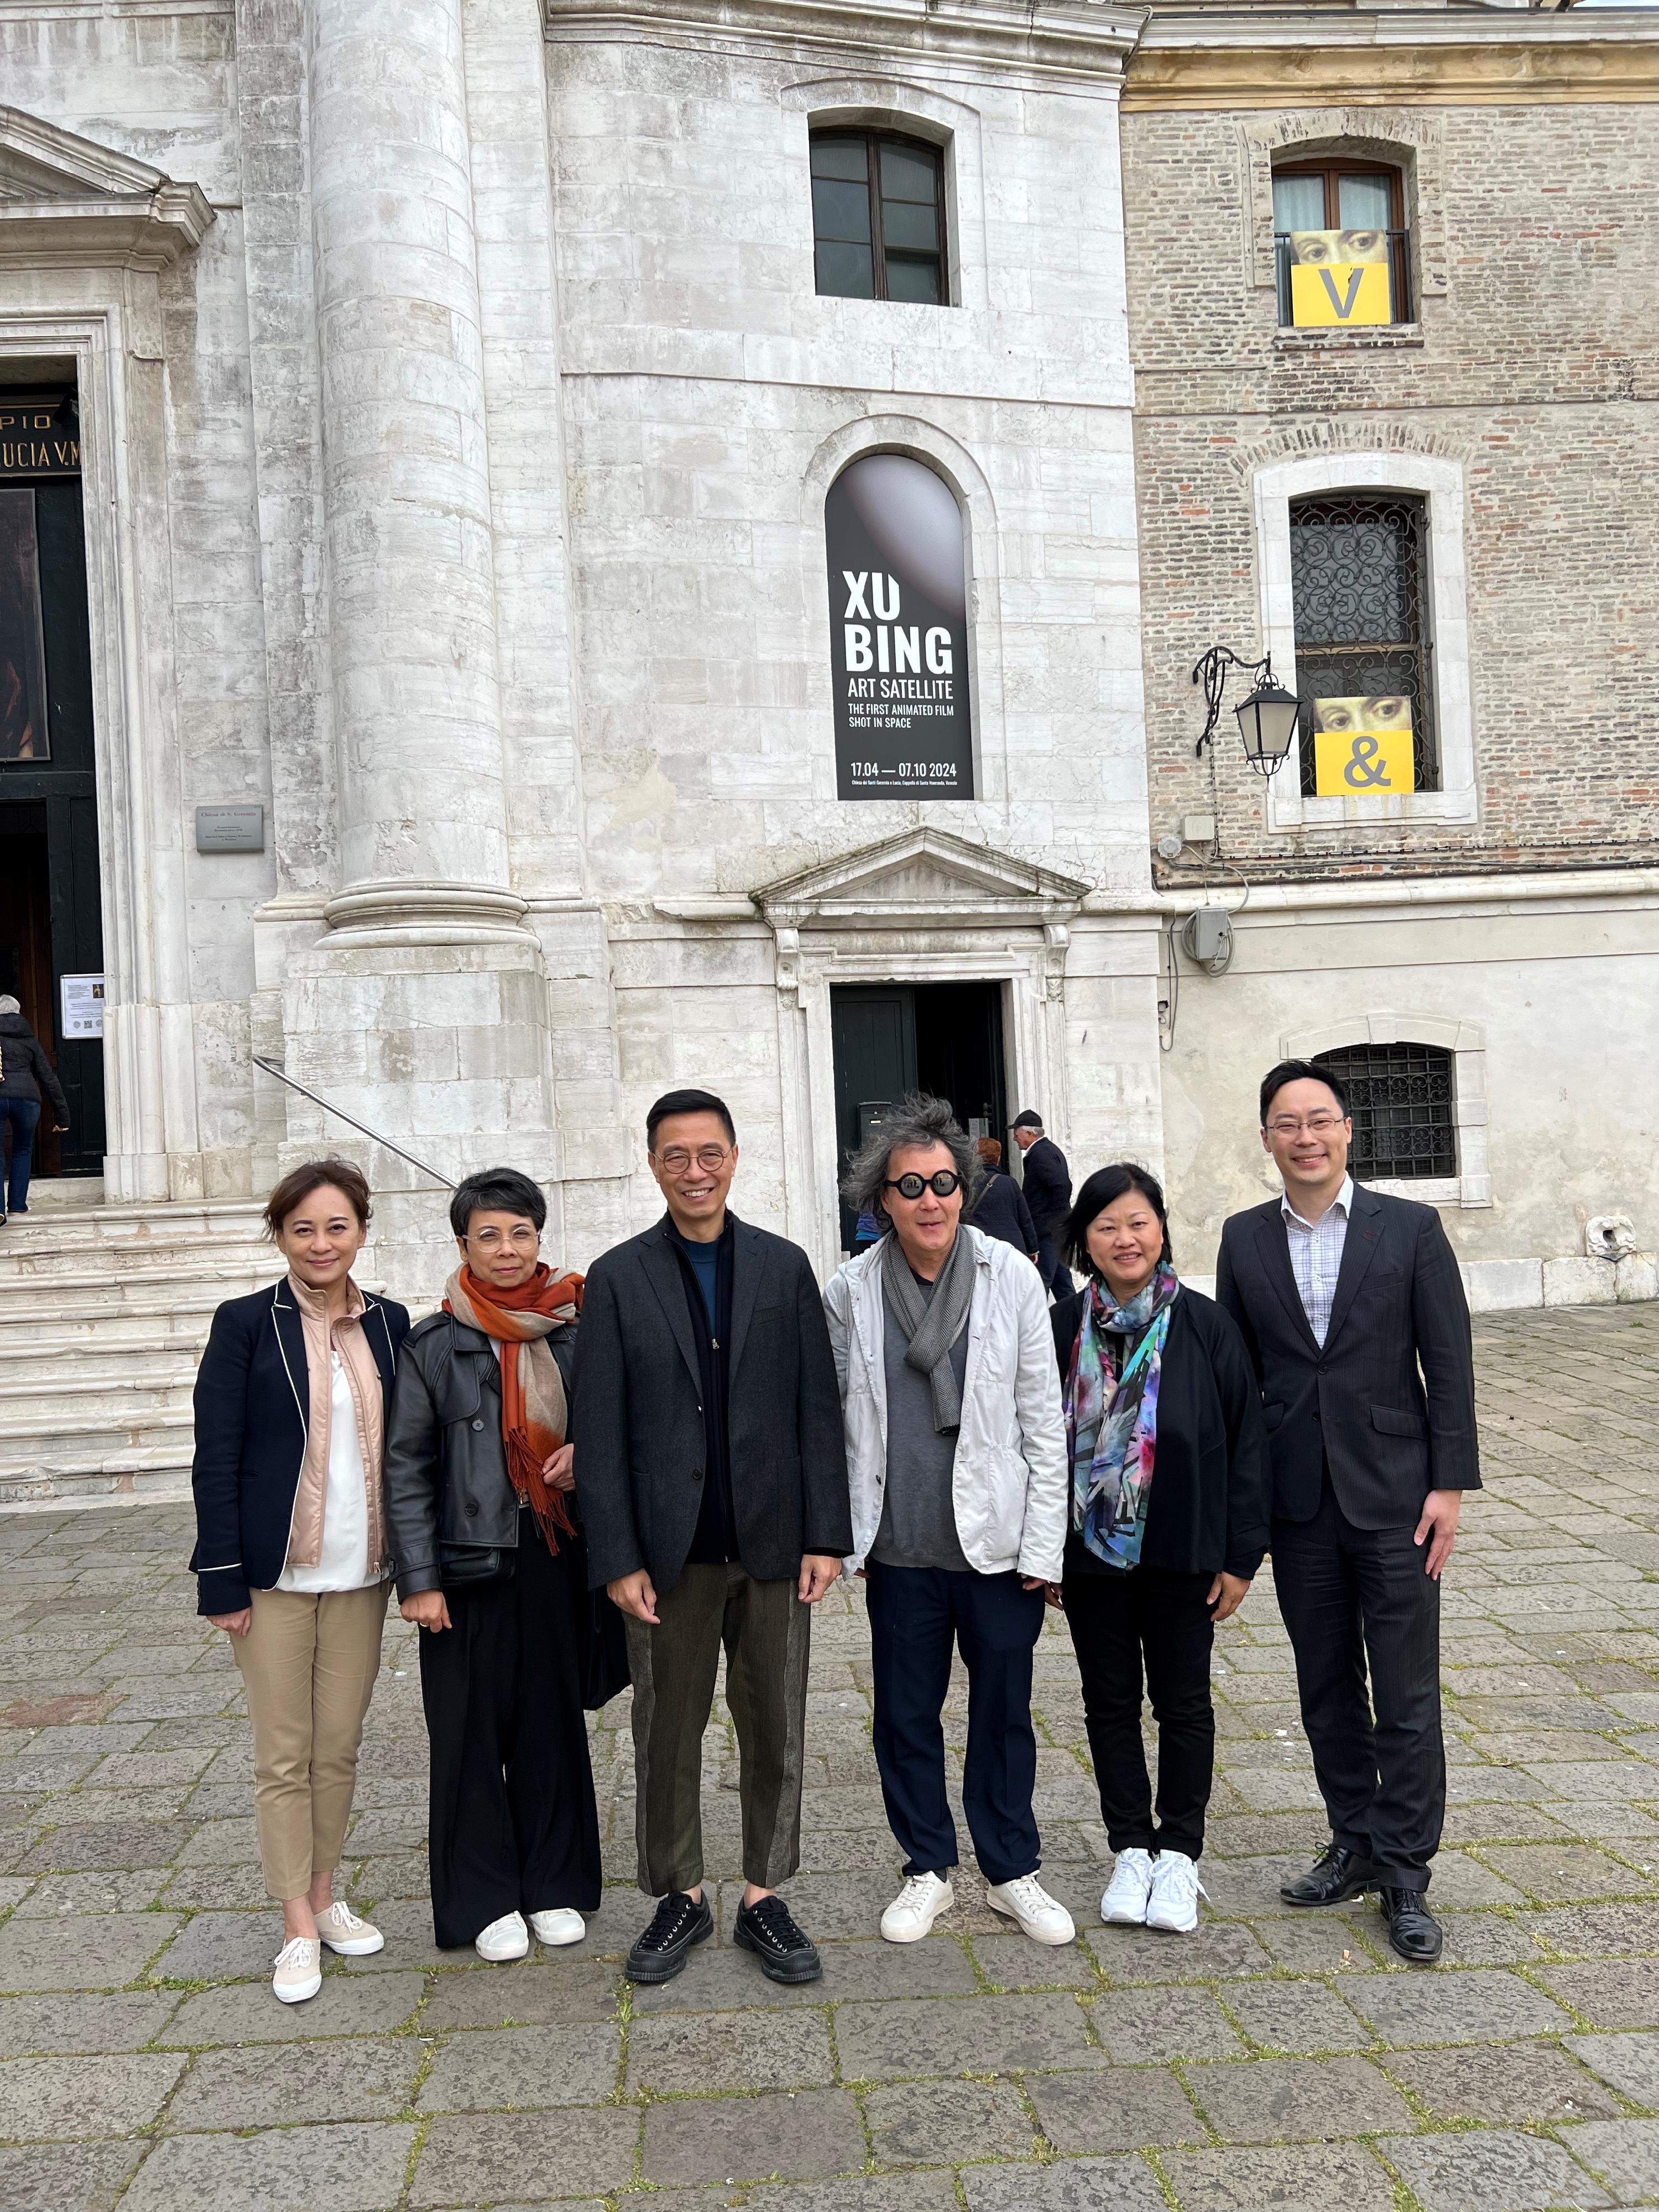 文化體育及旅遊局（文體旅局）局長楊潤雄（左三）今日（威尼斯時間四月二十日）在意大利威尼斯視藝雙年展，參觀獲文體旅局委任為「文化推廣大使」的徐冰（右三）的藝術展覽後合影。
